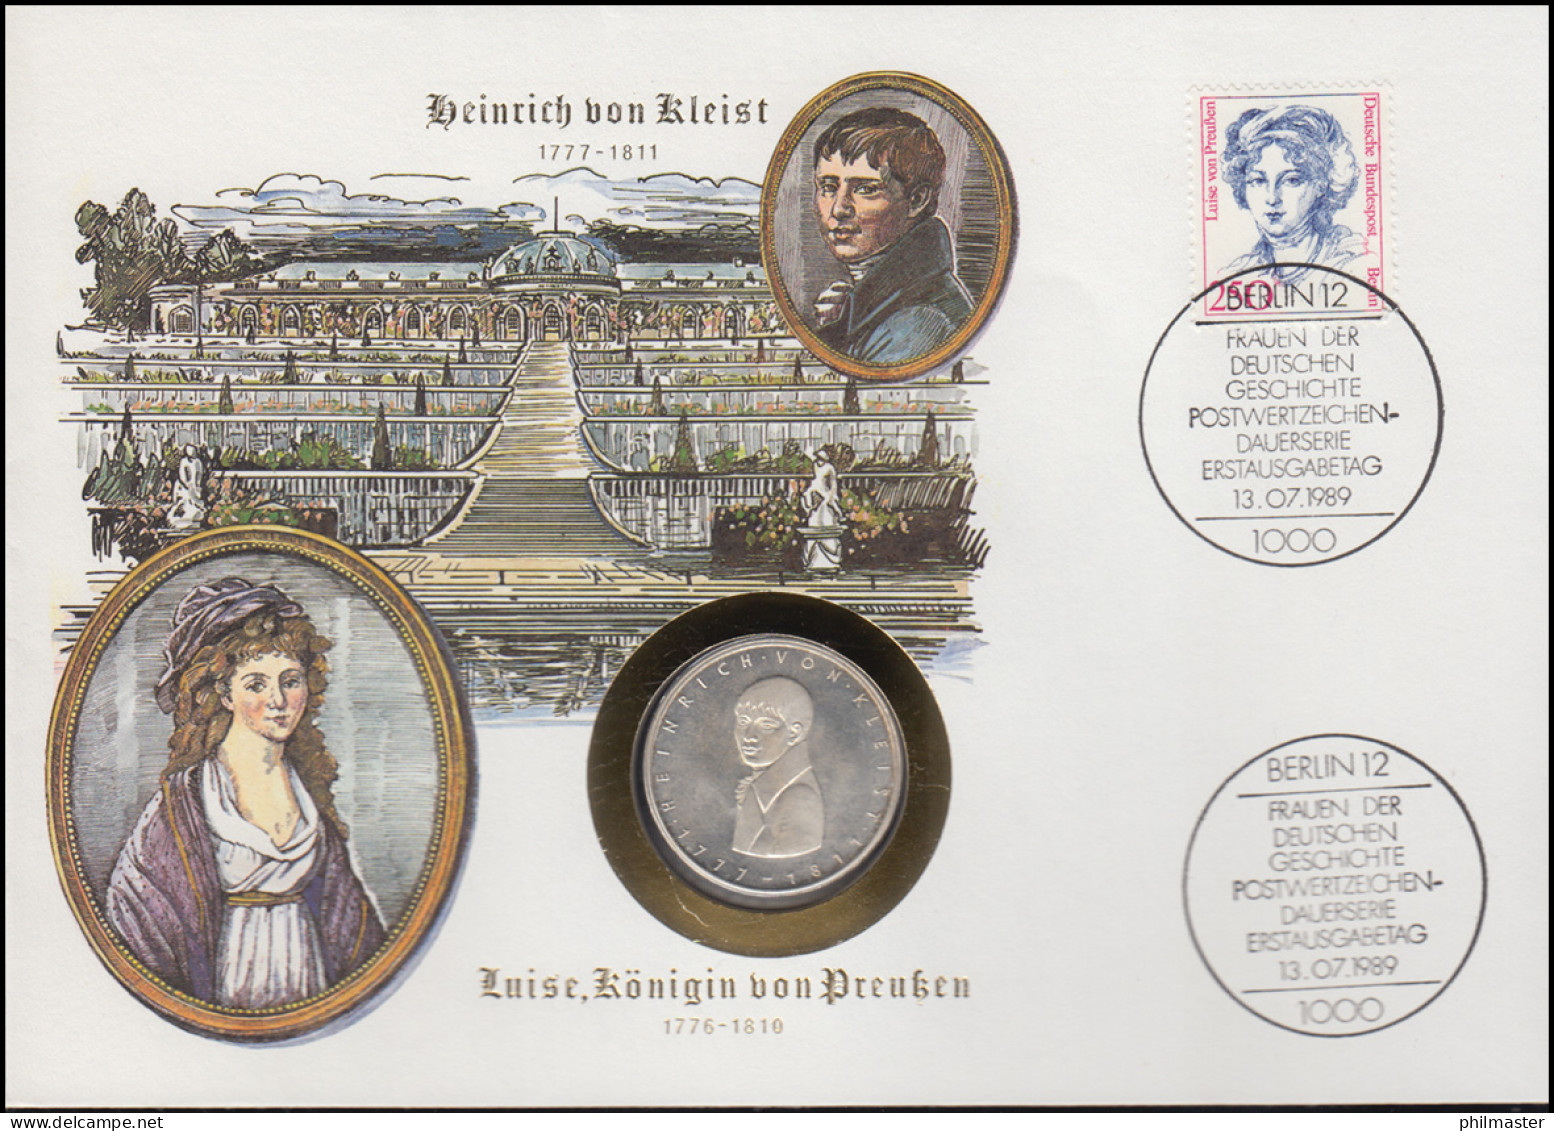 Numisbrief H. Von Kleist / Luise Von Preußen 5 DM / 250 Pf., ESST Bonn 13.7.1989 - Numisbriefe